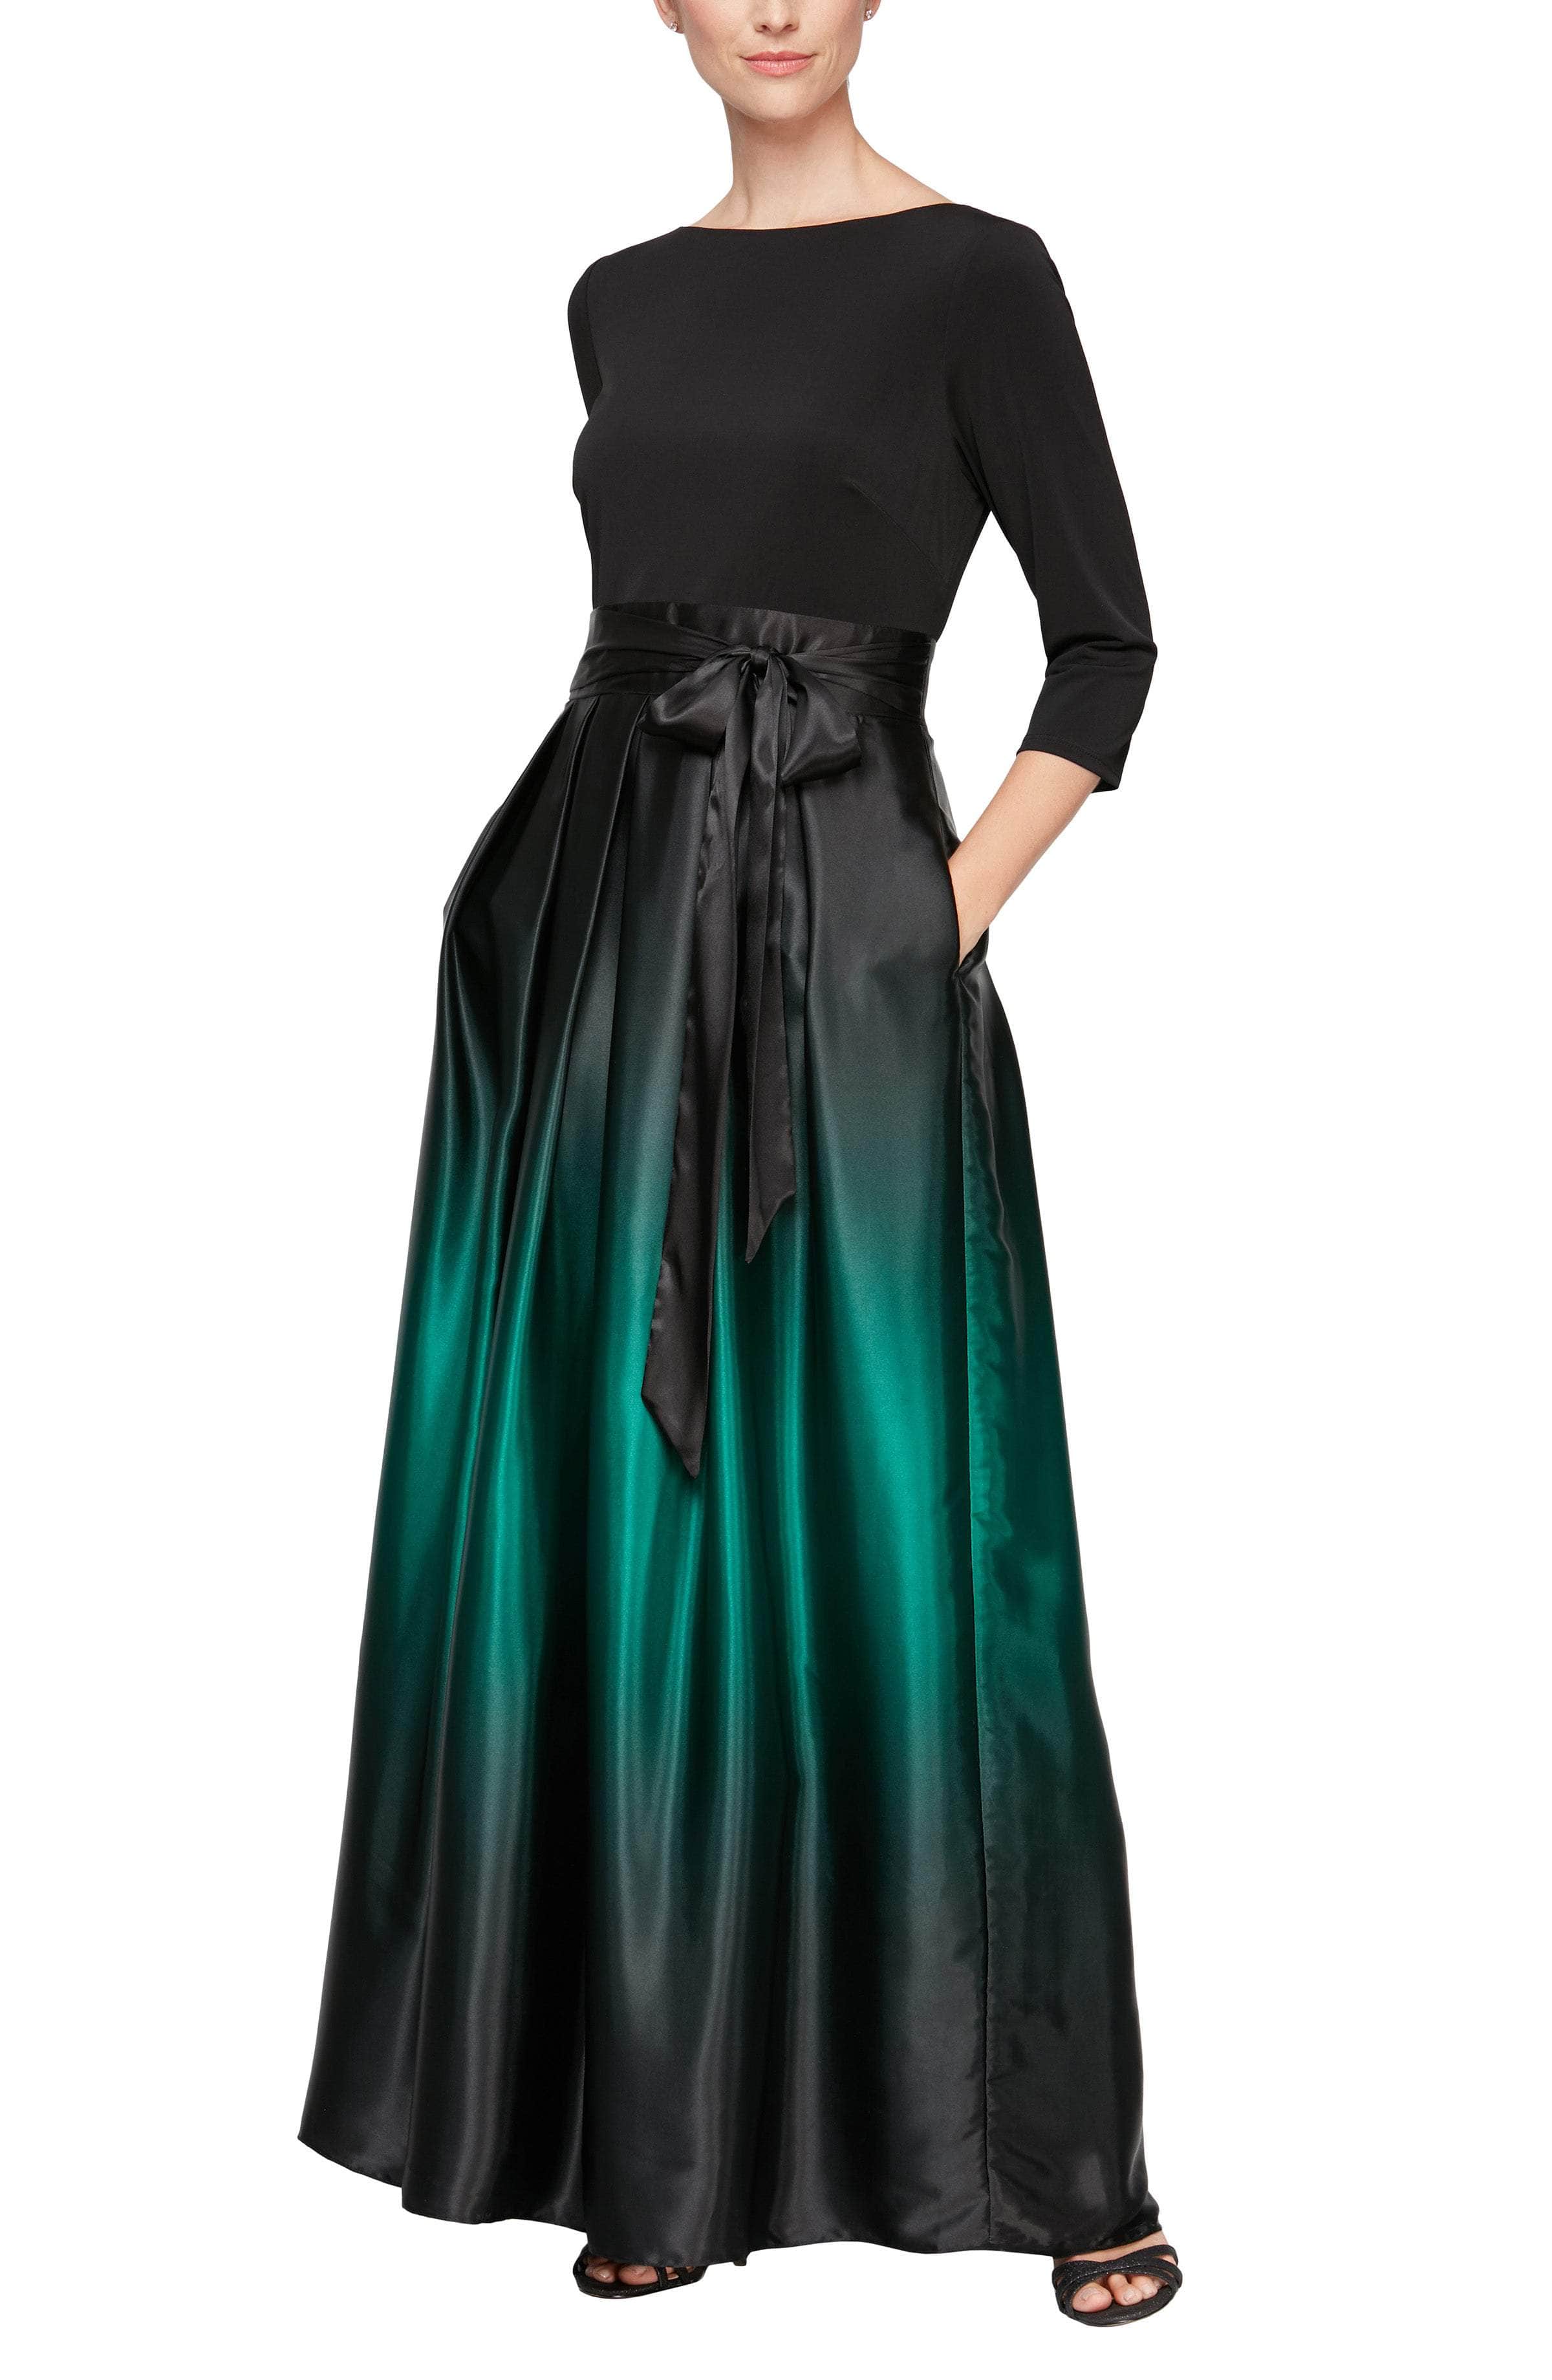 SLNY 9451111 - Ombre Quarter Sleeve A-Line Dress
